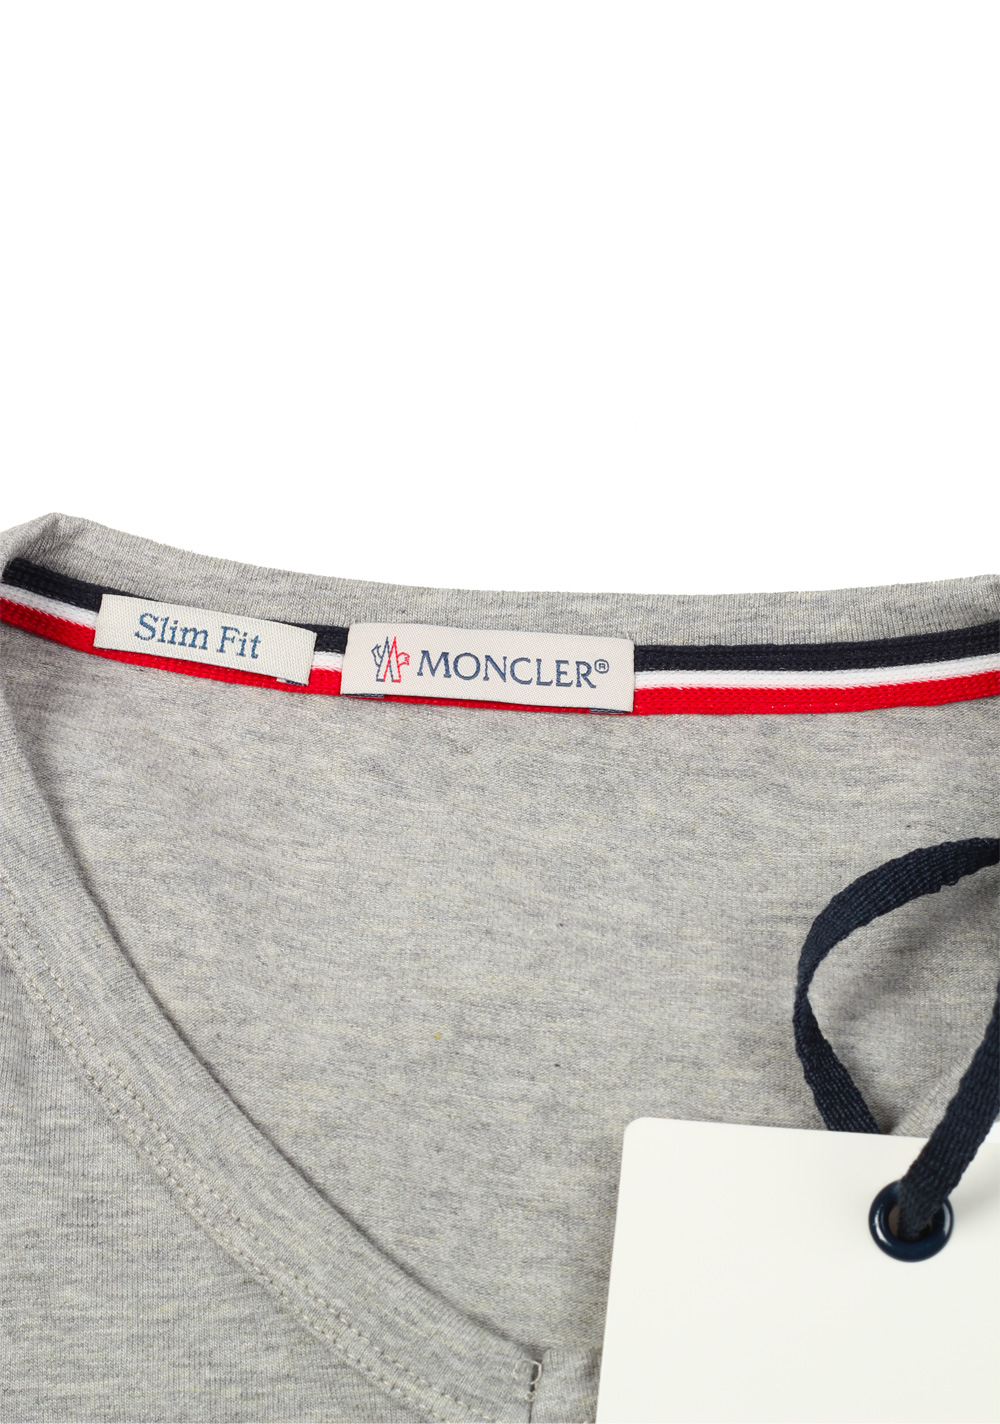 Moncler V Neck Tee Shirt Size L / 40R U.S. Gray | Costume Limité